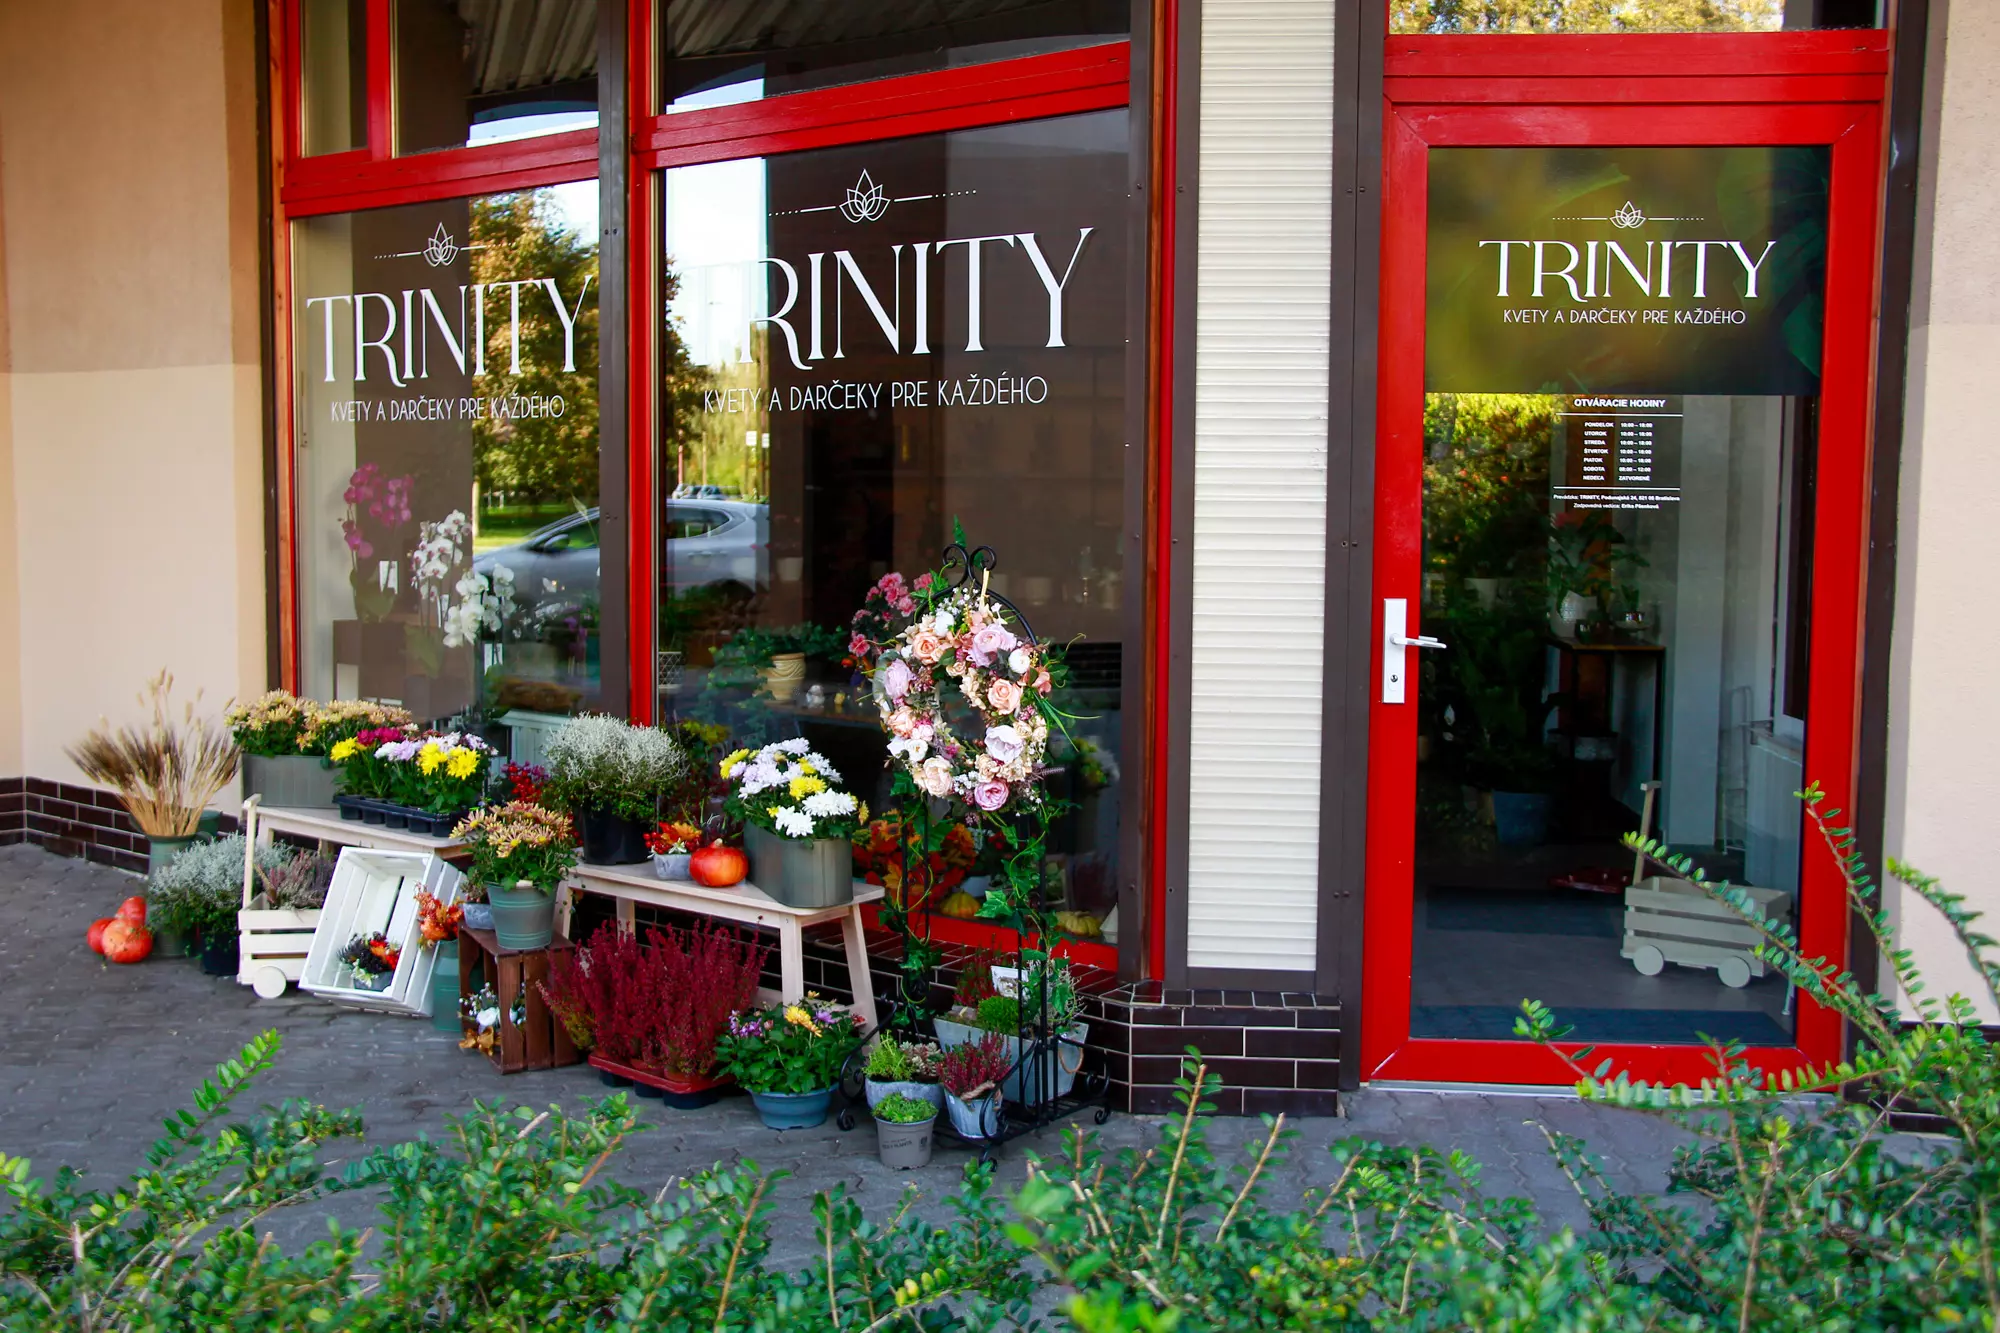 kvetinárstvo trinity, predajňa v podunajských biskupiciach v bratislave, možnosť objednania kvetov a rastlín online, kvetinárstvo v bratislave